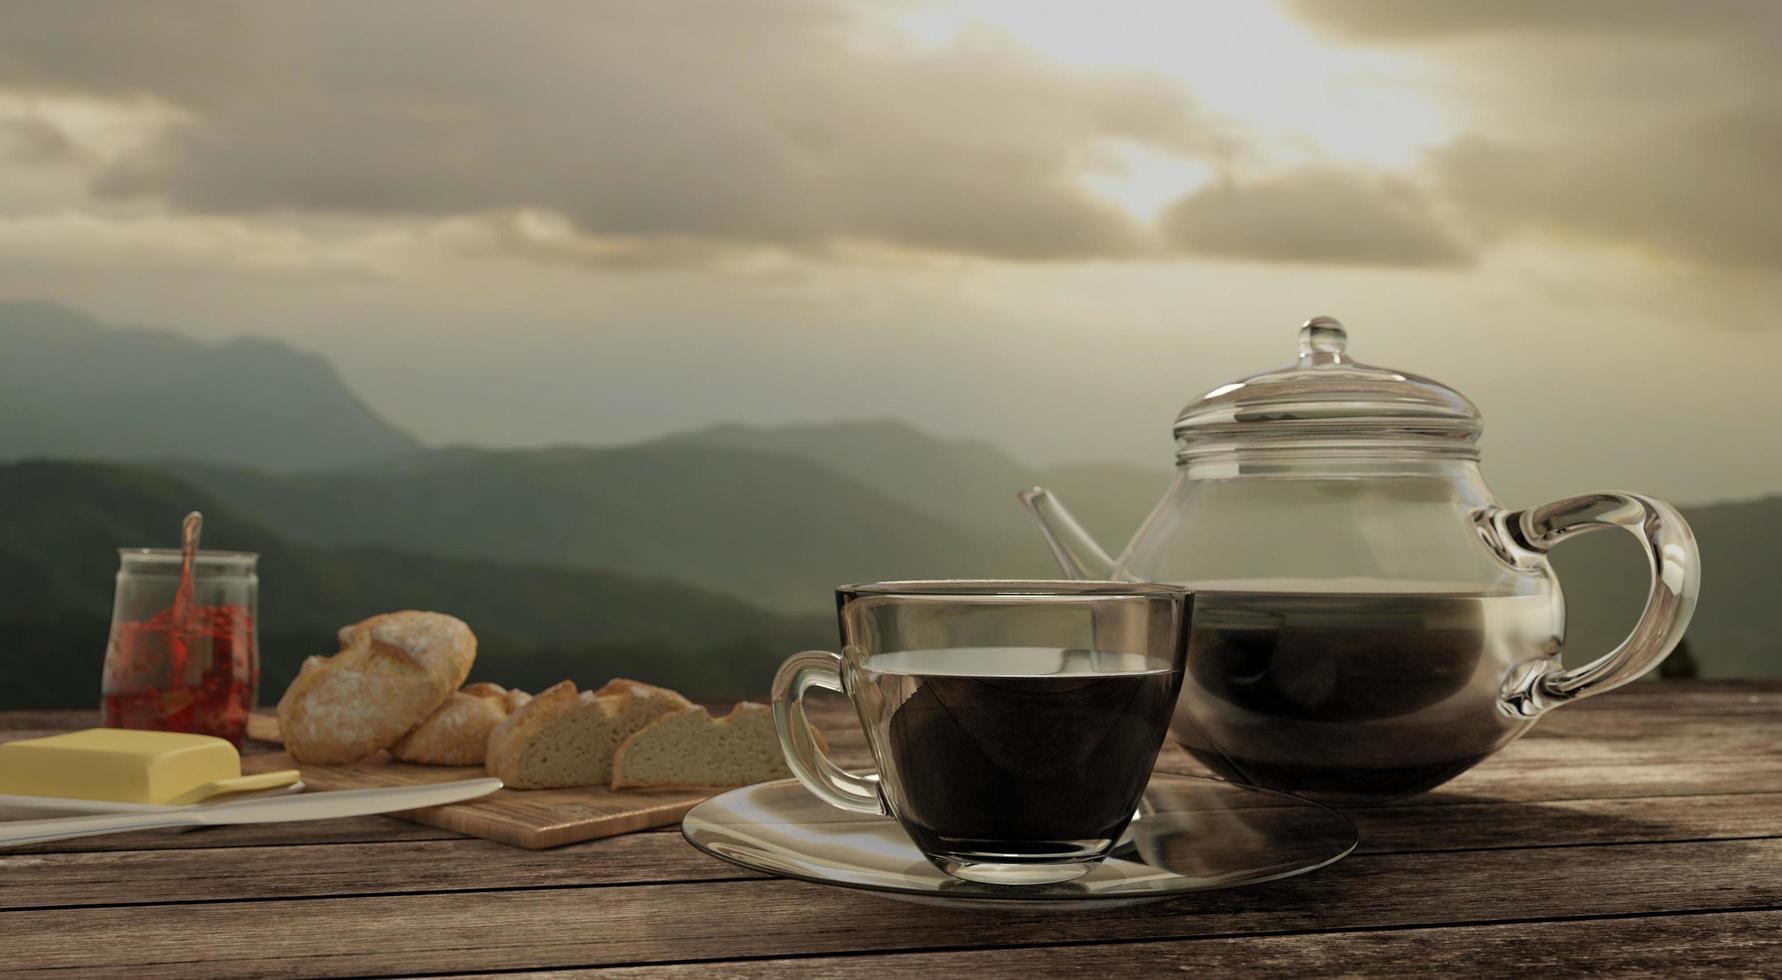 café noir dans une tasse à café claire et un pot sur une table en bois avec vue sur la montagne. rendu 3d. photo